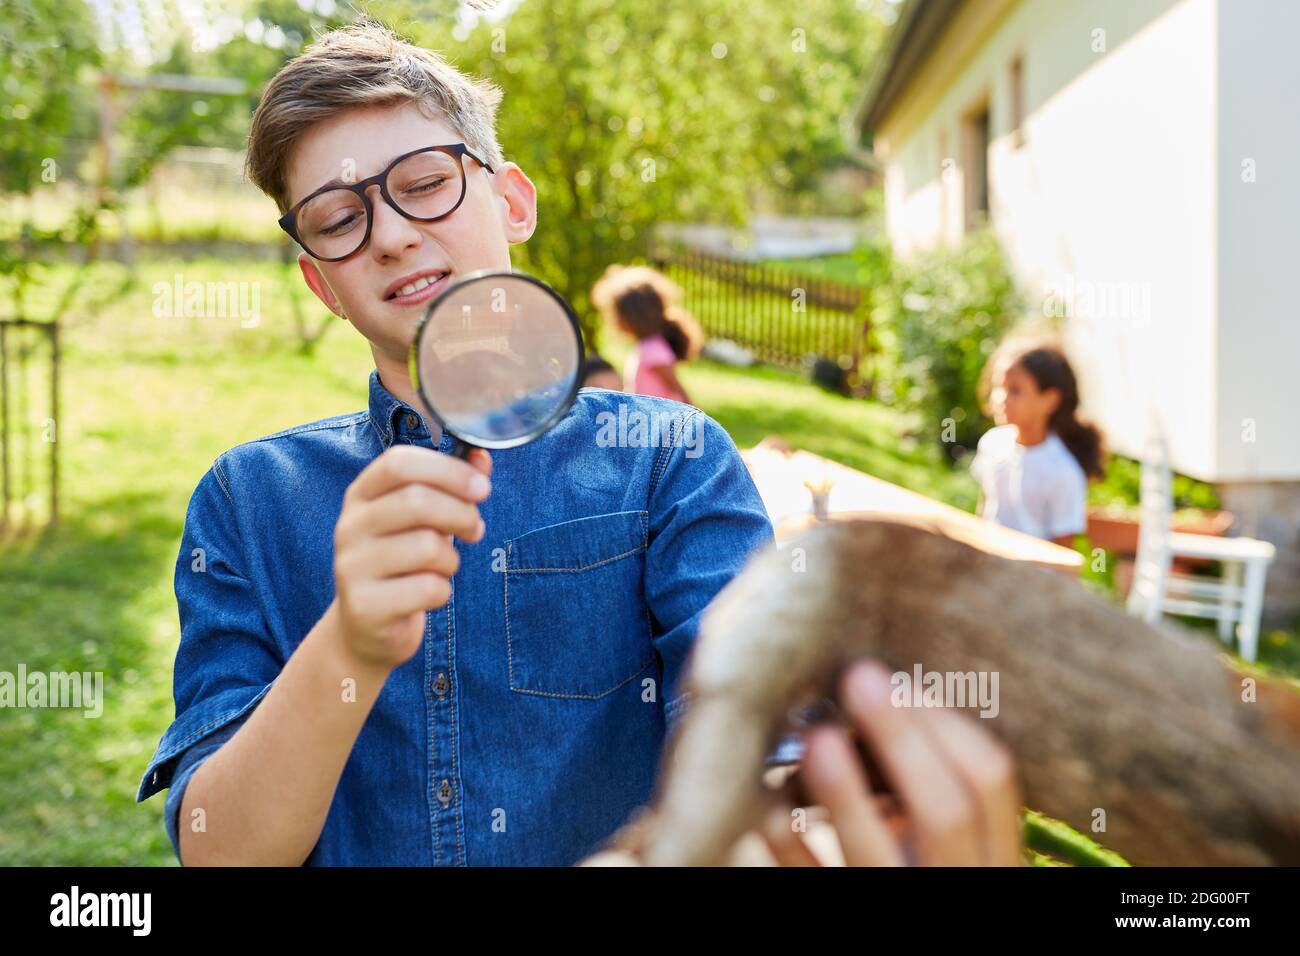 Junge als neugieriger Forscher im Biologieurlaub Sieht Baumrinde durch Vergrößerungsglas an Stockfoto